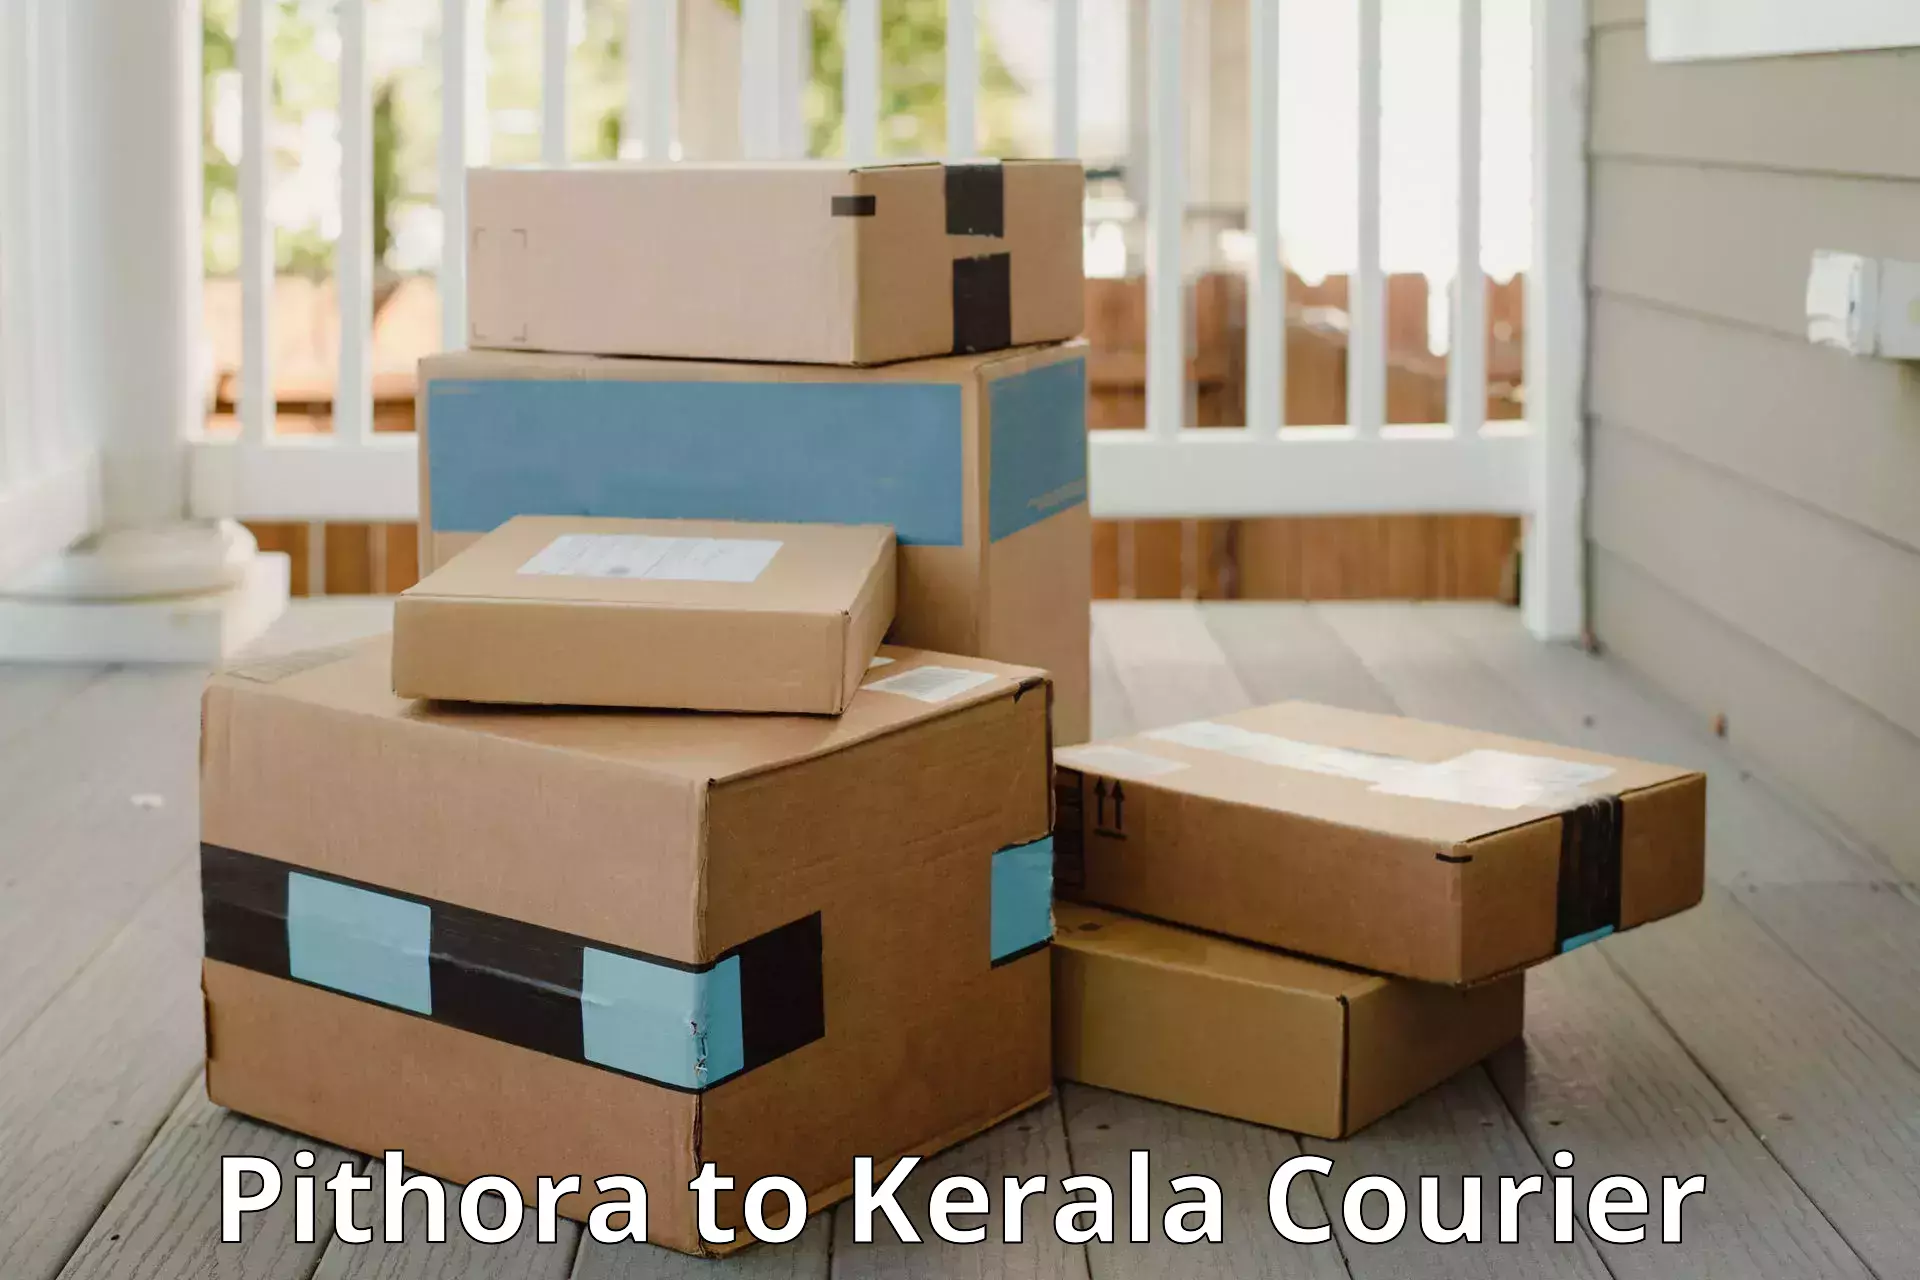 Baggage transport professionals Pithora to Kerala